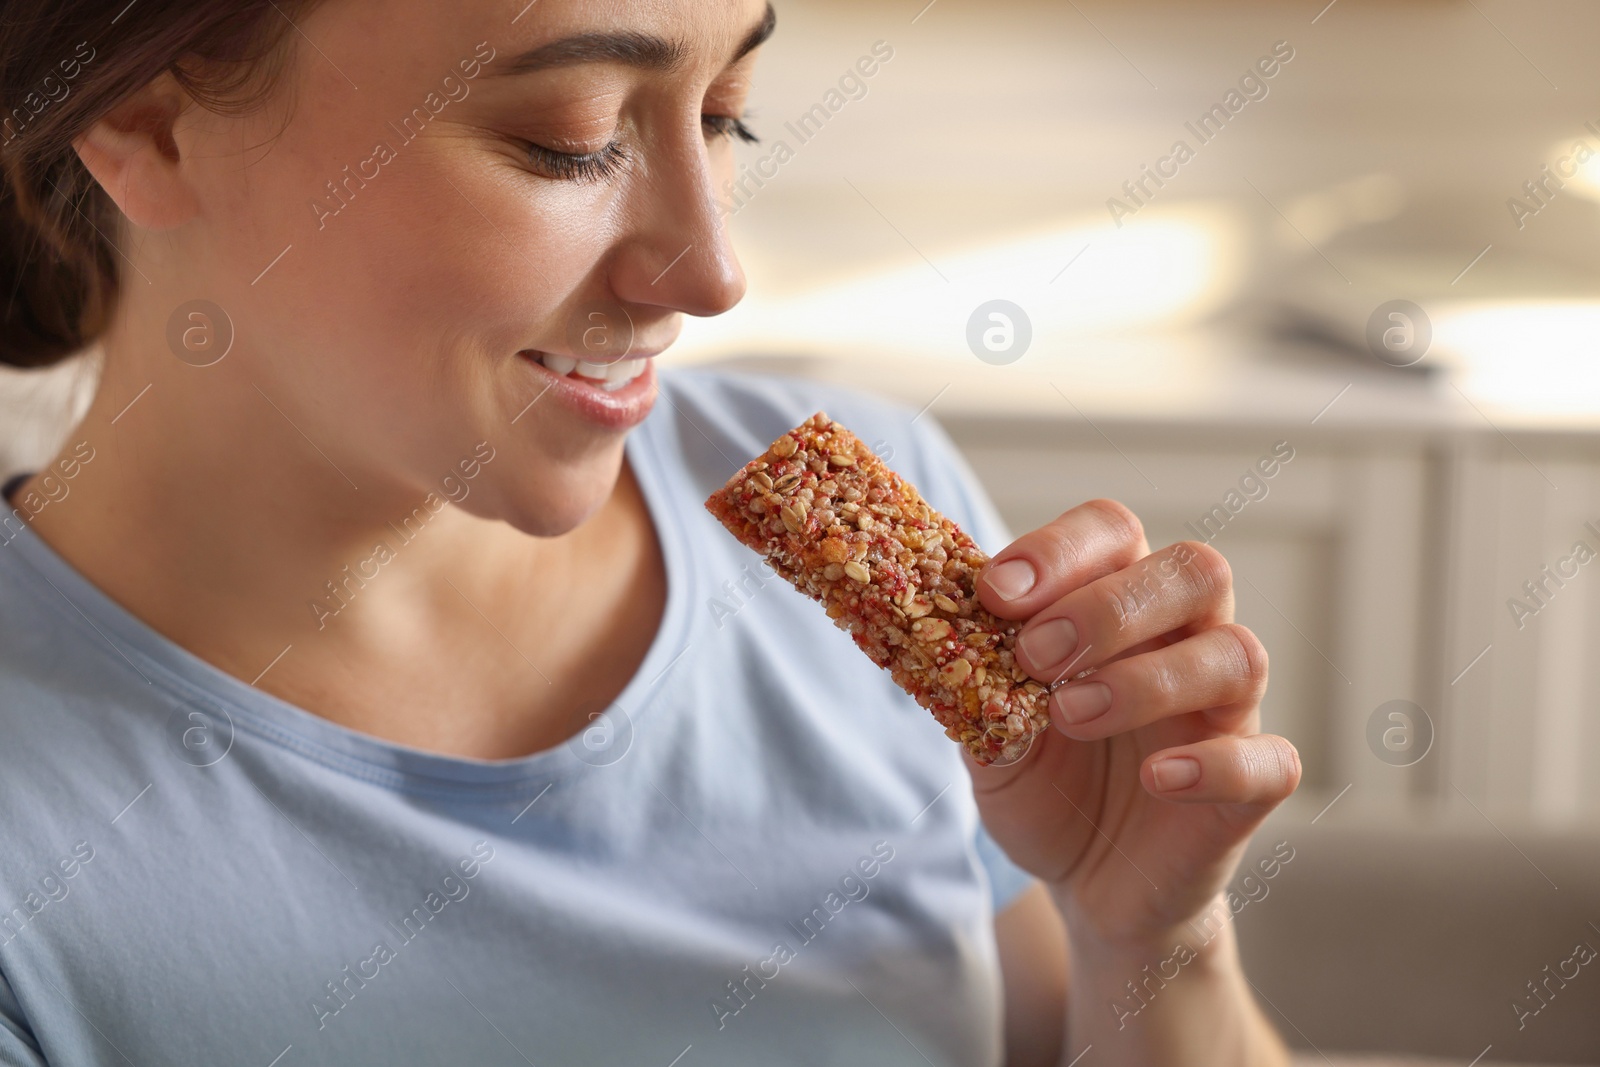 Photo of Woman eating tasty granola bar at home, closeup